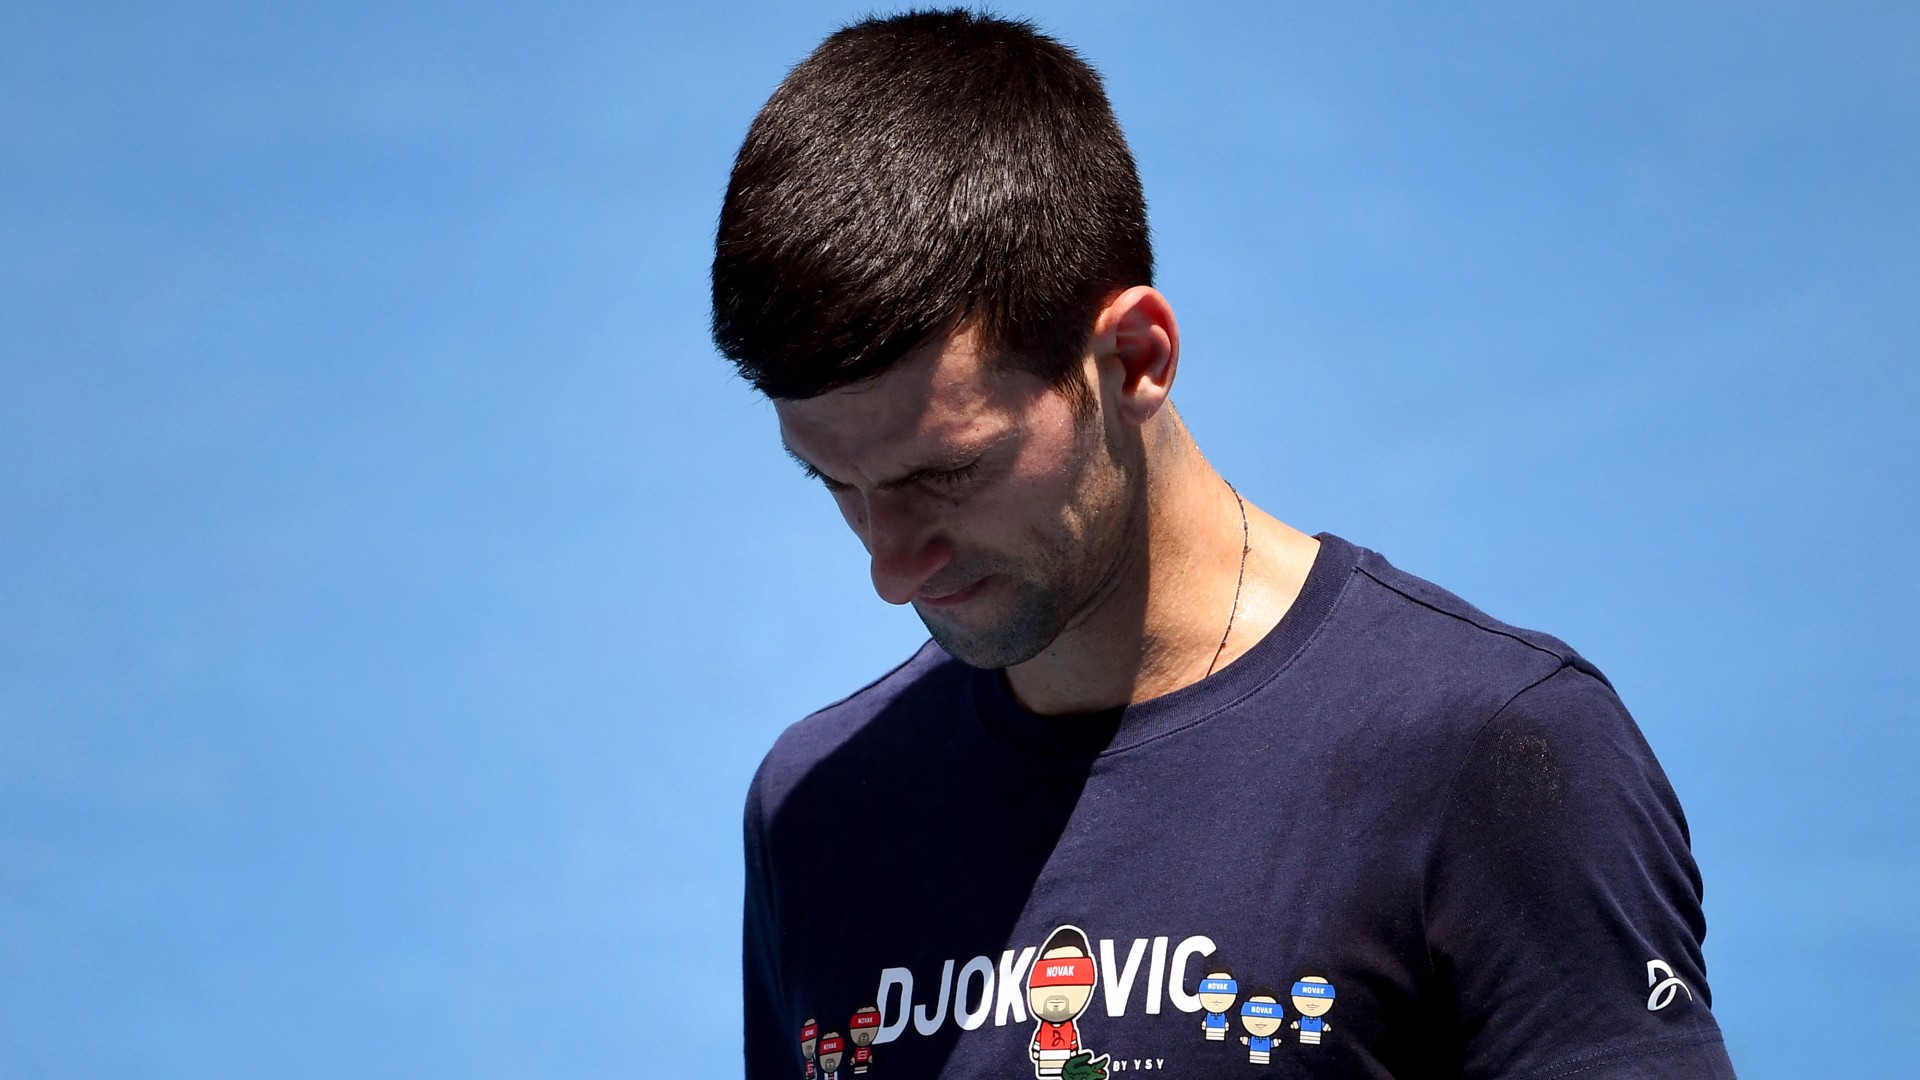 Eldőlt a huzavona: Djokovicot hazaküldik az Australian Openről